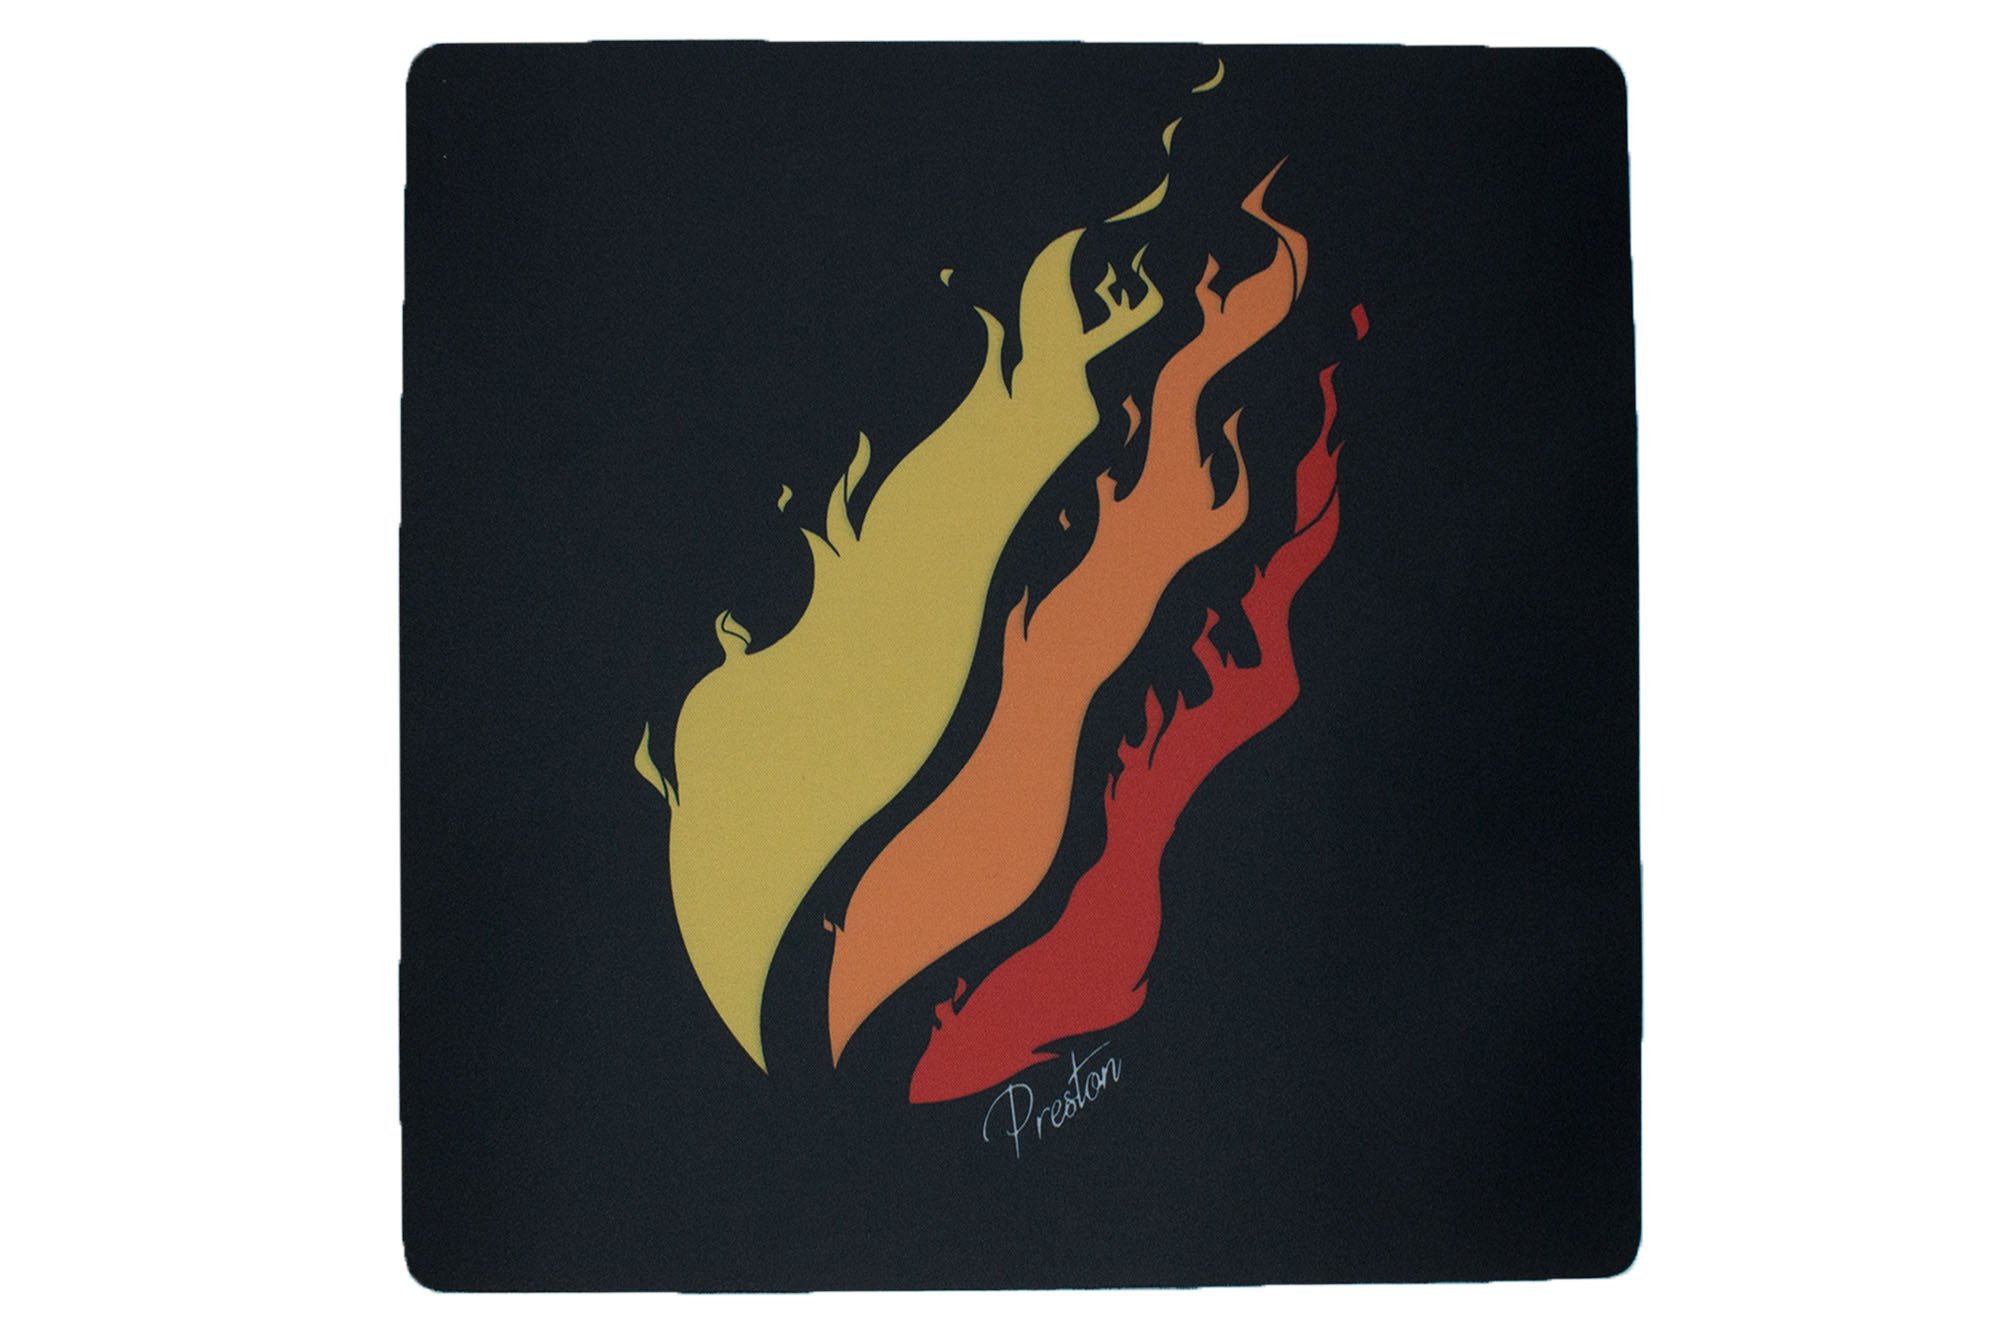 Prestonplayz Fire Logos